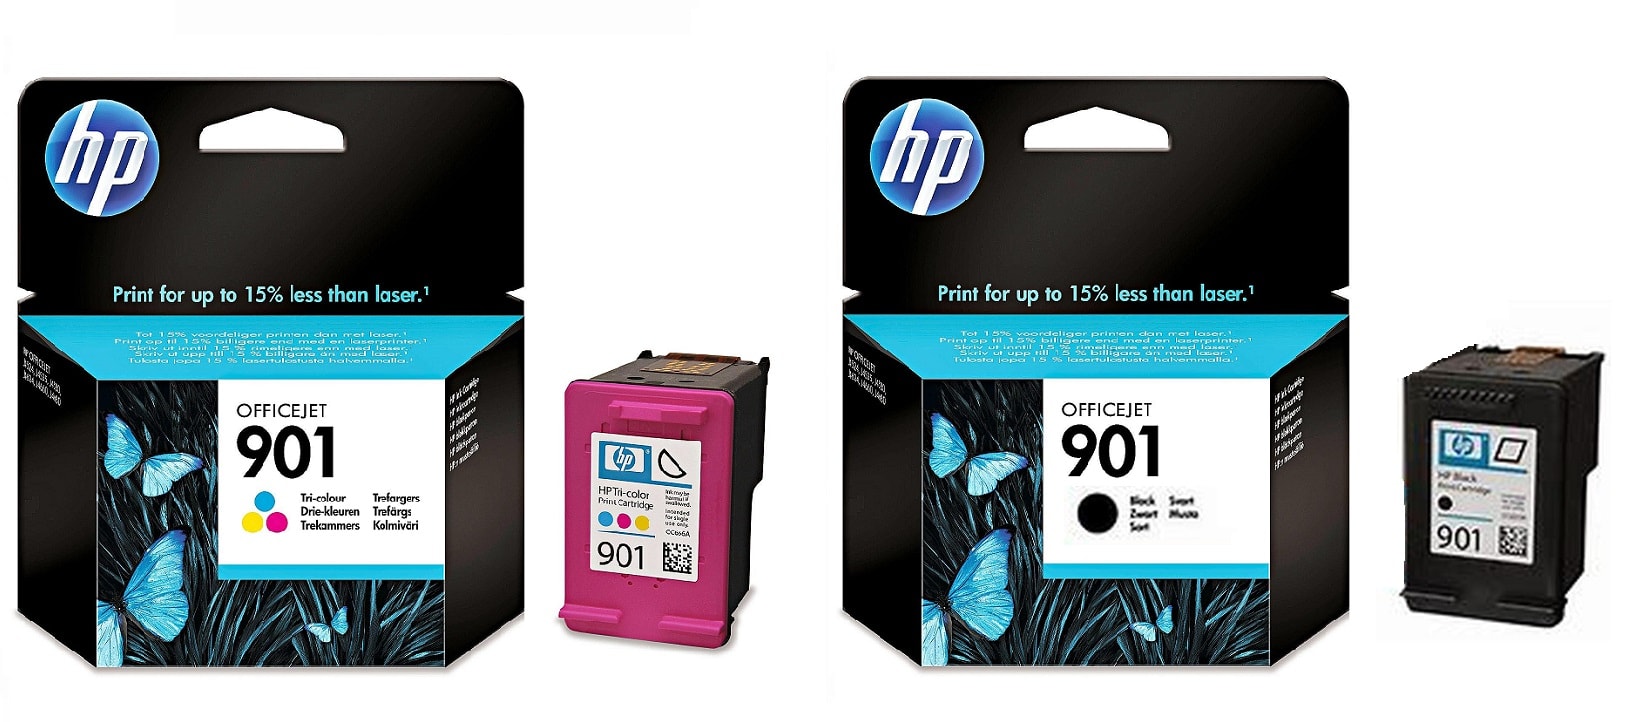 Картриджи hp 901 black hp 901 color для HP Officejet J4660. Купить комплект оригинальных картриджей.